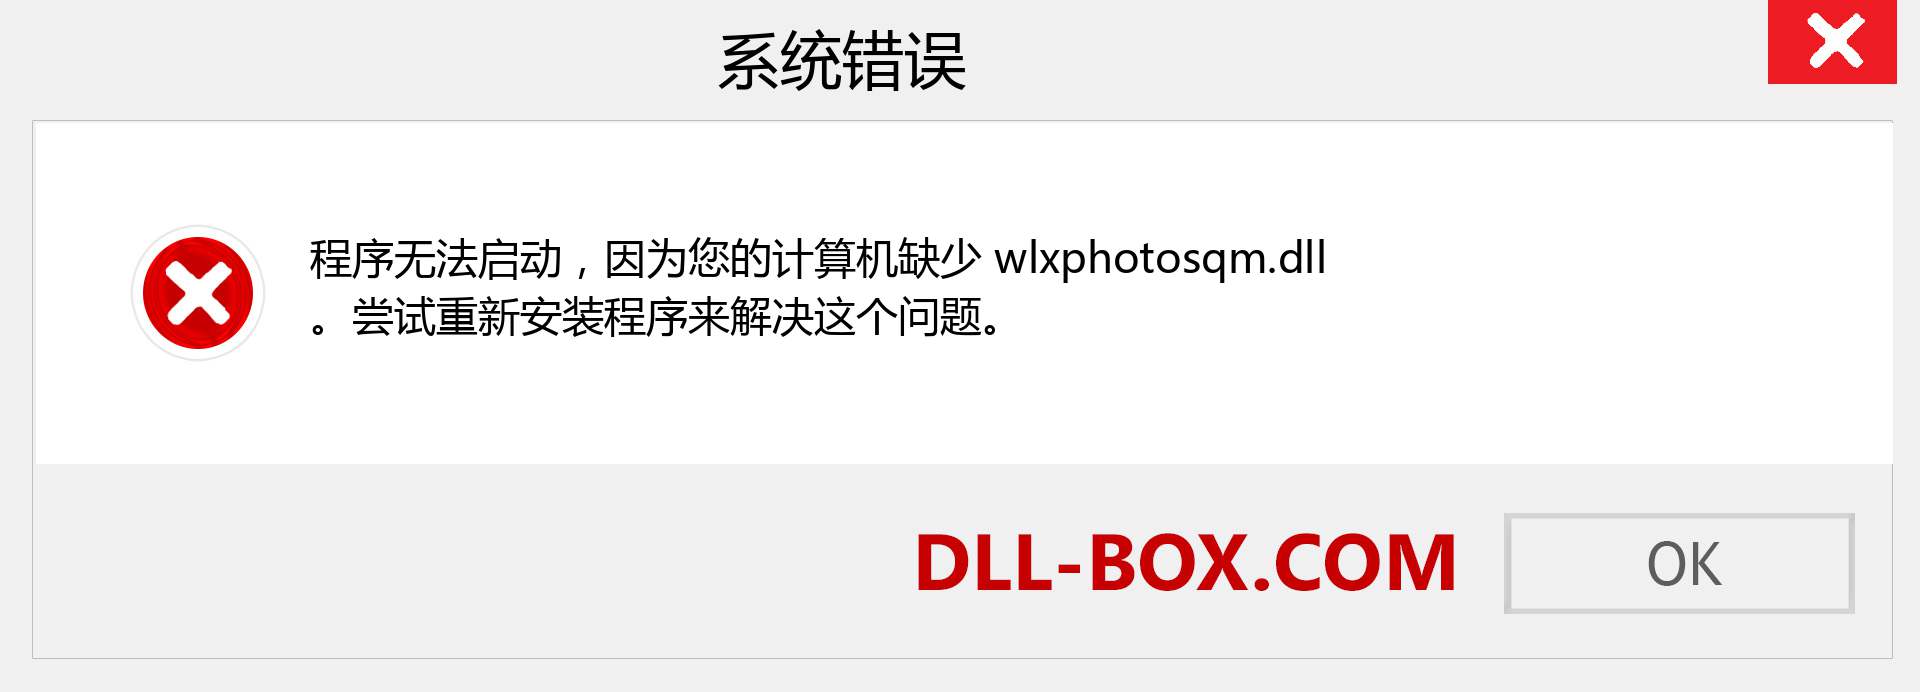 wlxphotosqm.dll 文件丢失？。 适用于 Windows 7、8、10 的下载 - 修复 Windows、照片、图像上的 wlxphotosqm dll 丢失错误